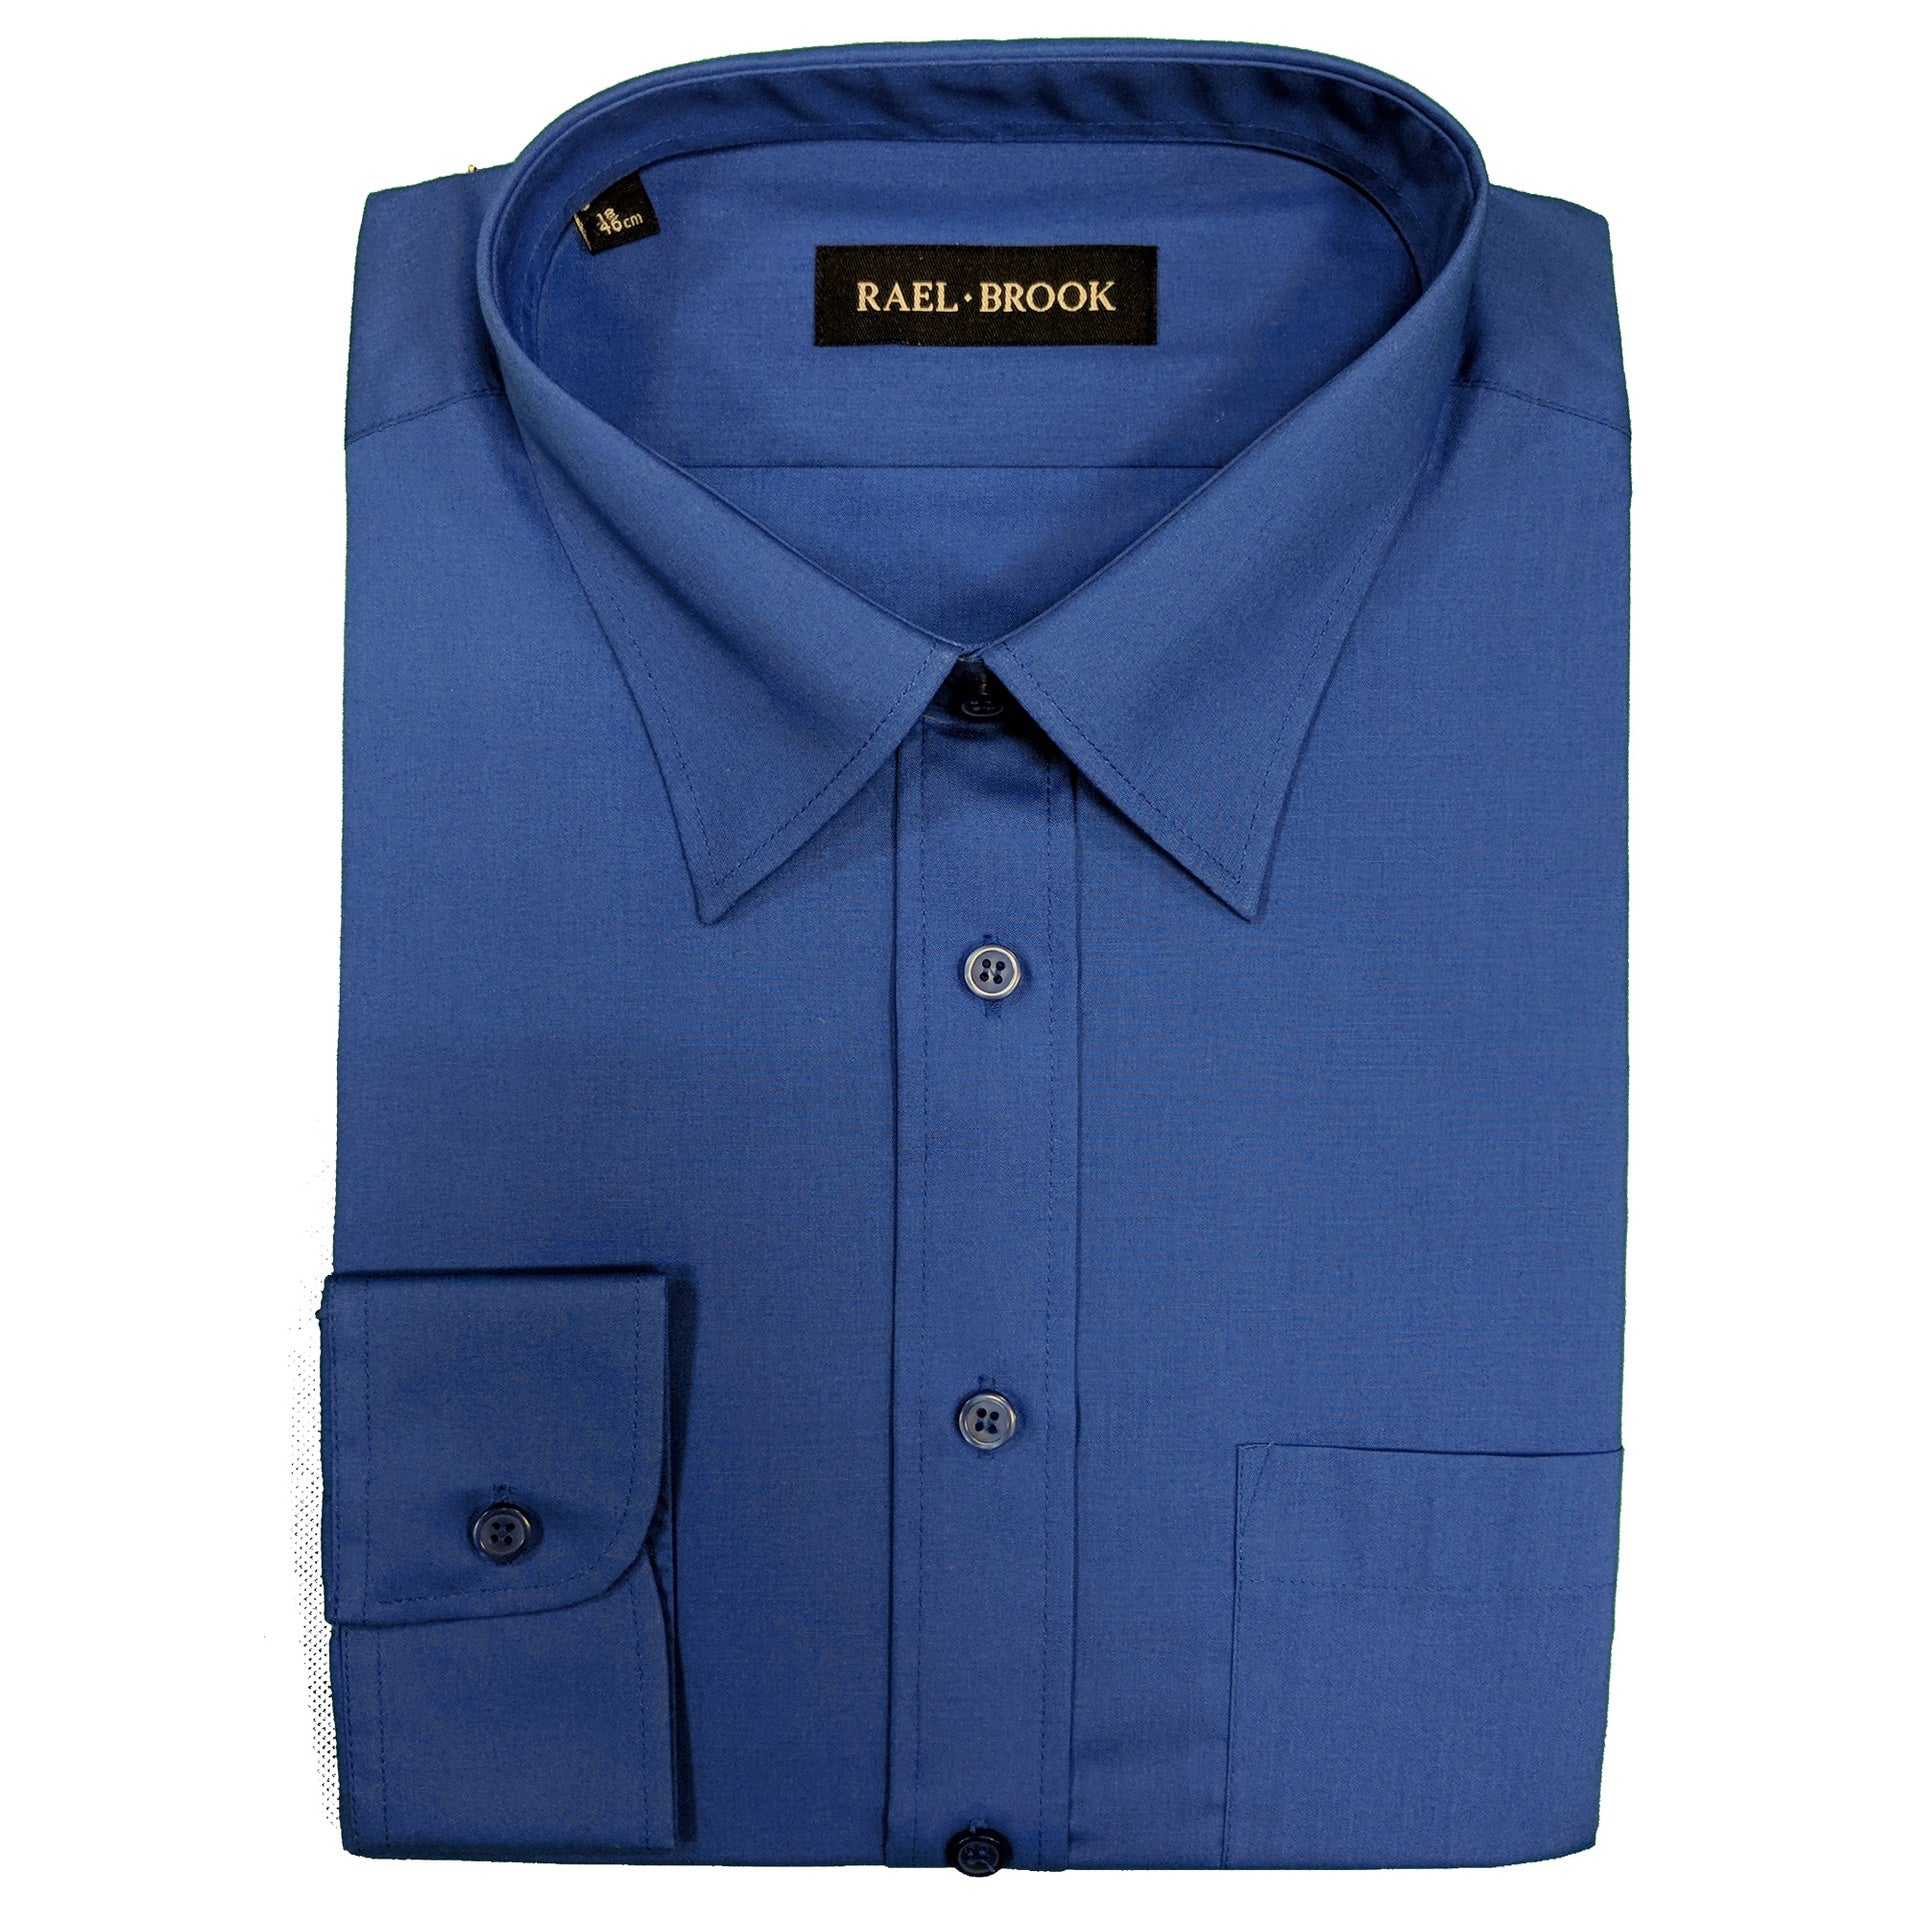 Rael Brook Plain L/S Shirt - 8039 - Royal Blue 1